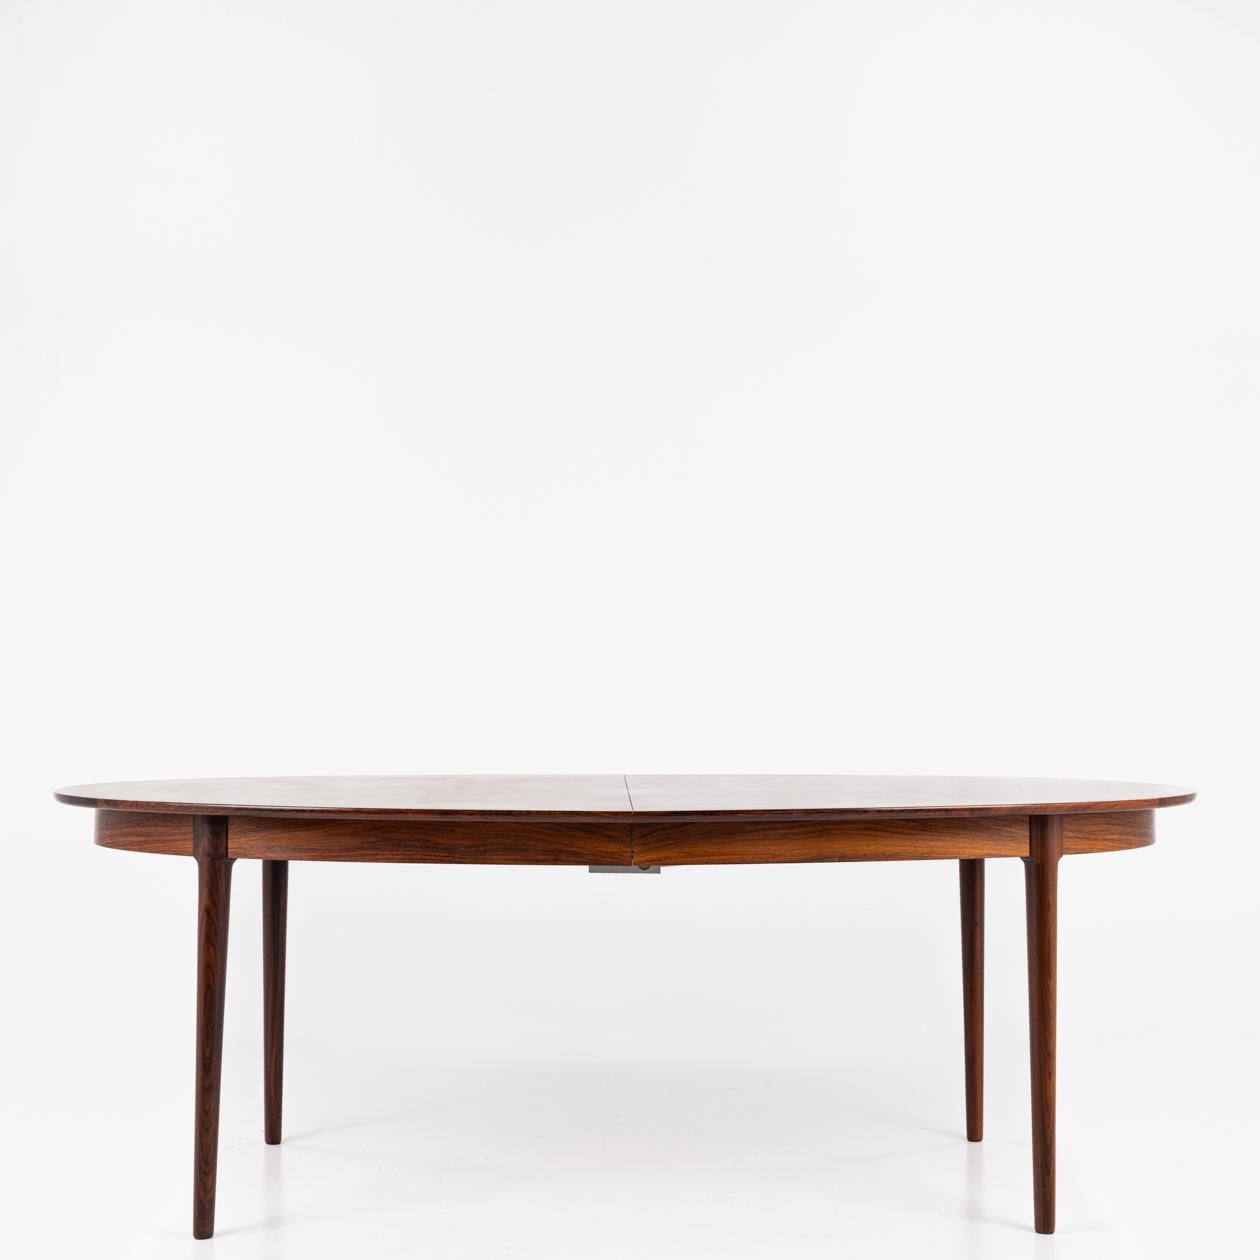 Oval rosewood dining table by Torbjørn Afdal 1